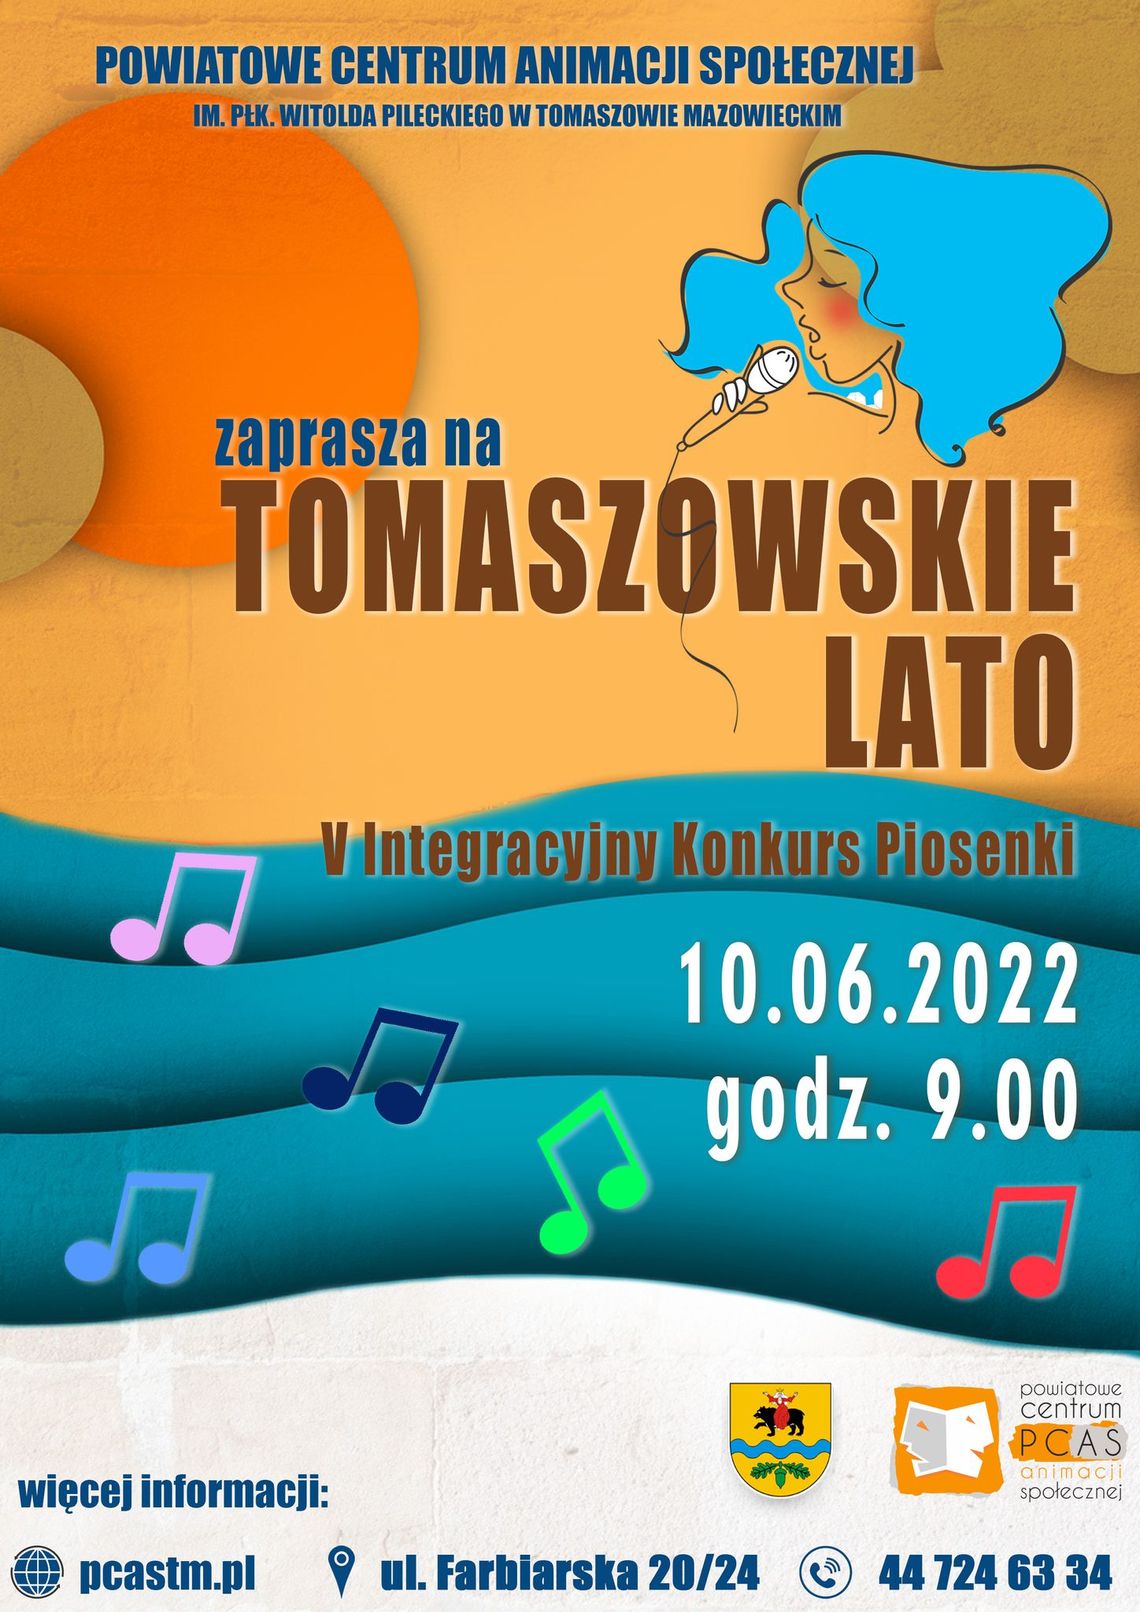 Jubileuszowy Integracyjny Konkurs Piosenki „Tomaszowskie Lato” już  piątek